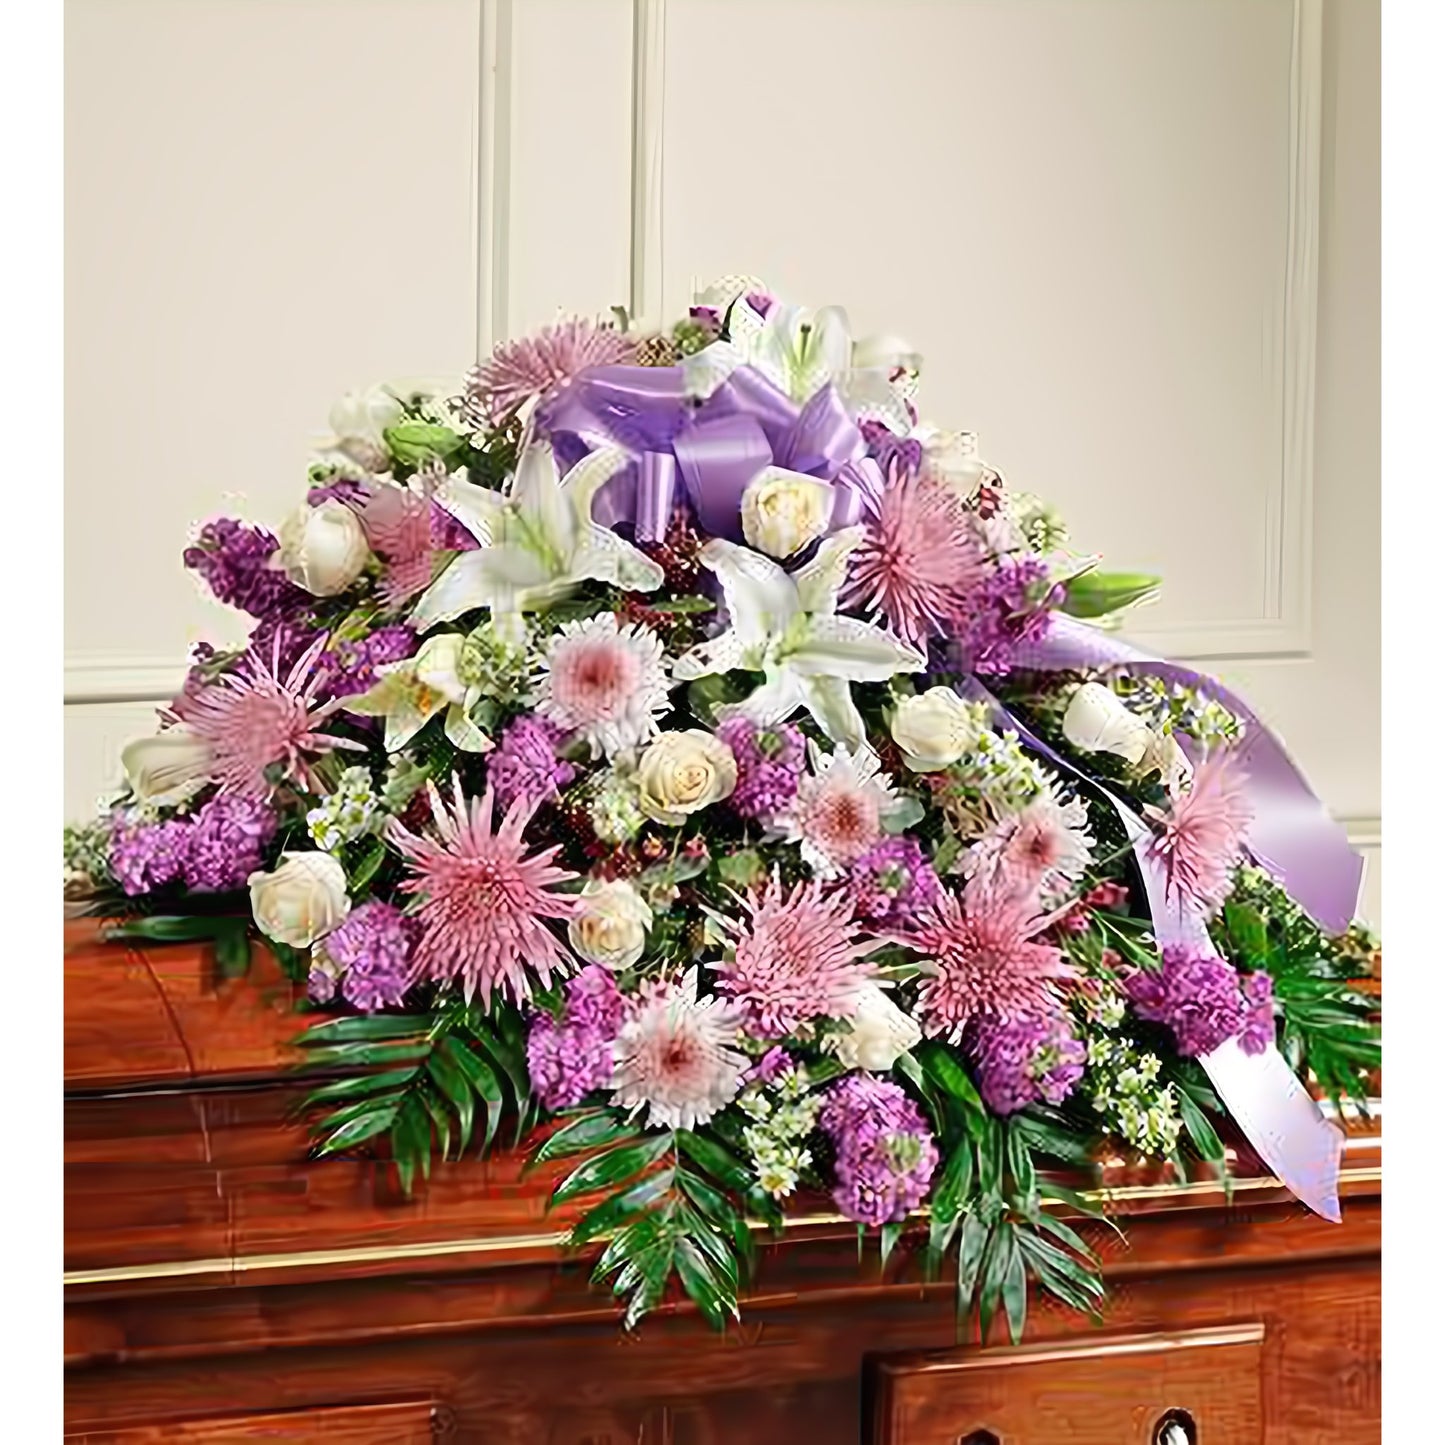 Cherished Memories Lavender Half Casket Cover - Floral Arrangement - Flower Delivery Brooklyn